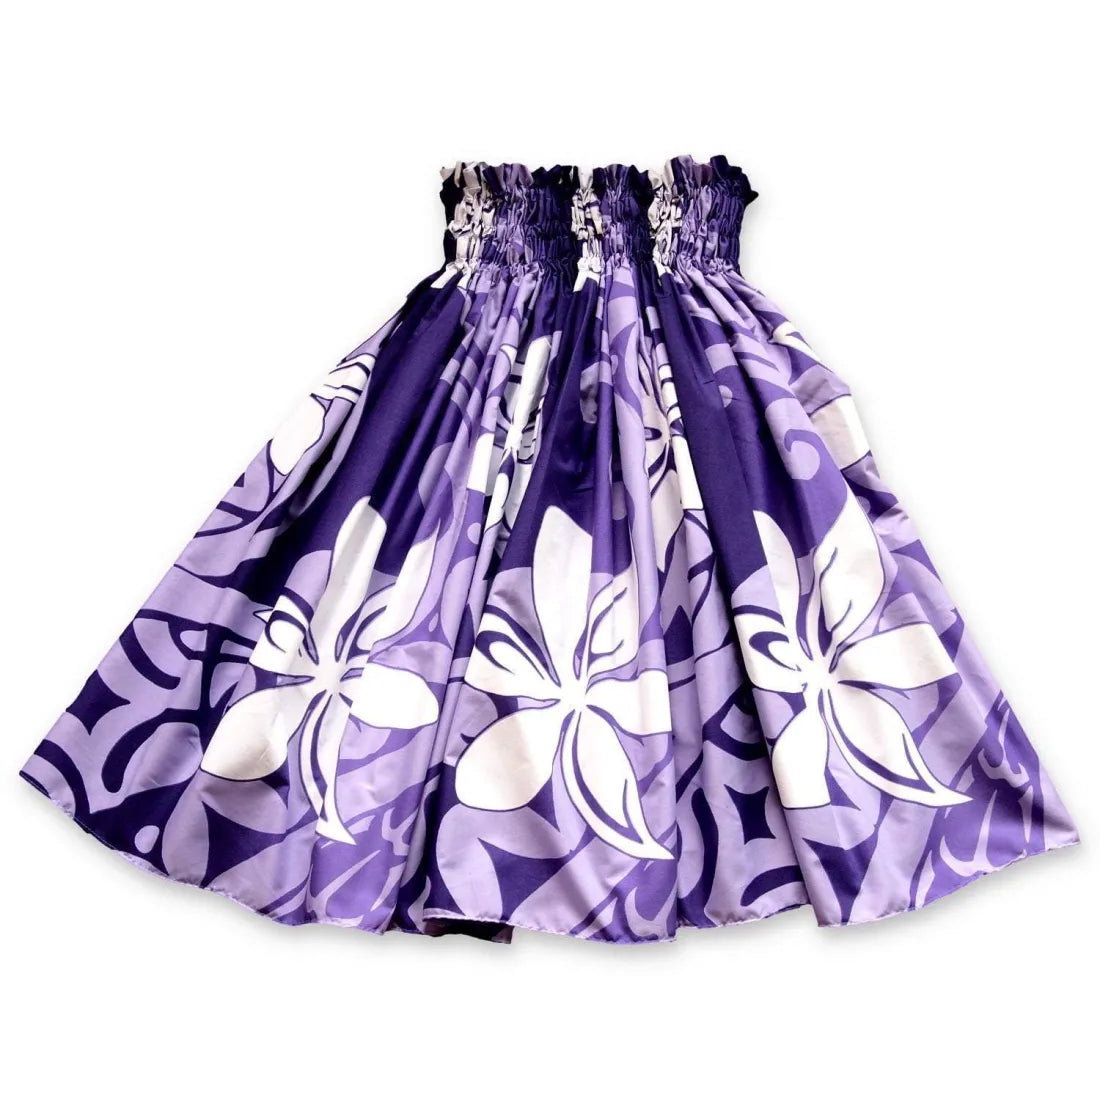 Tiare Swirl Purple Single Pa’u Hawaiian Hula Skirt - Made In Hawaii